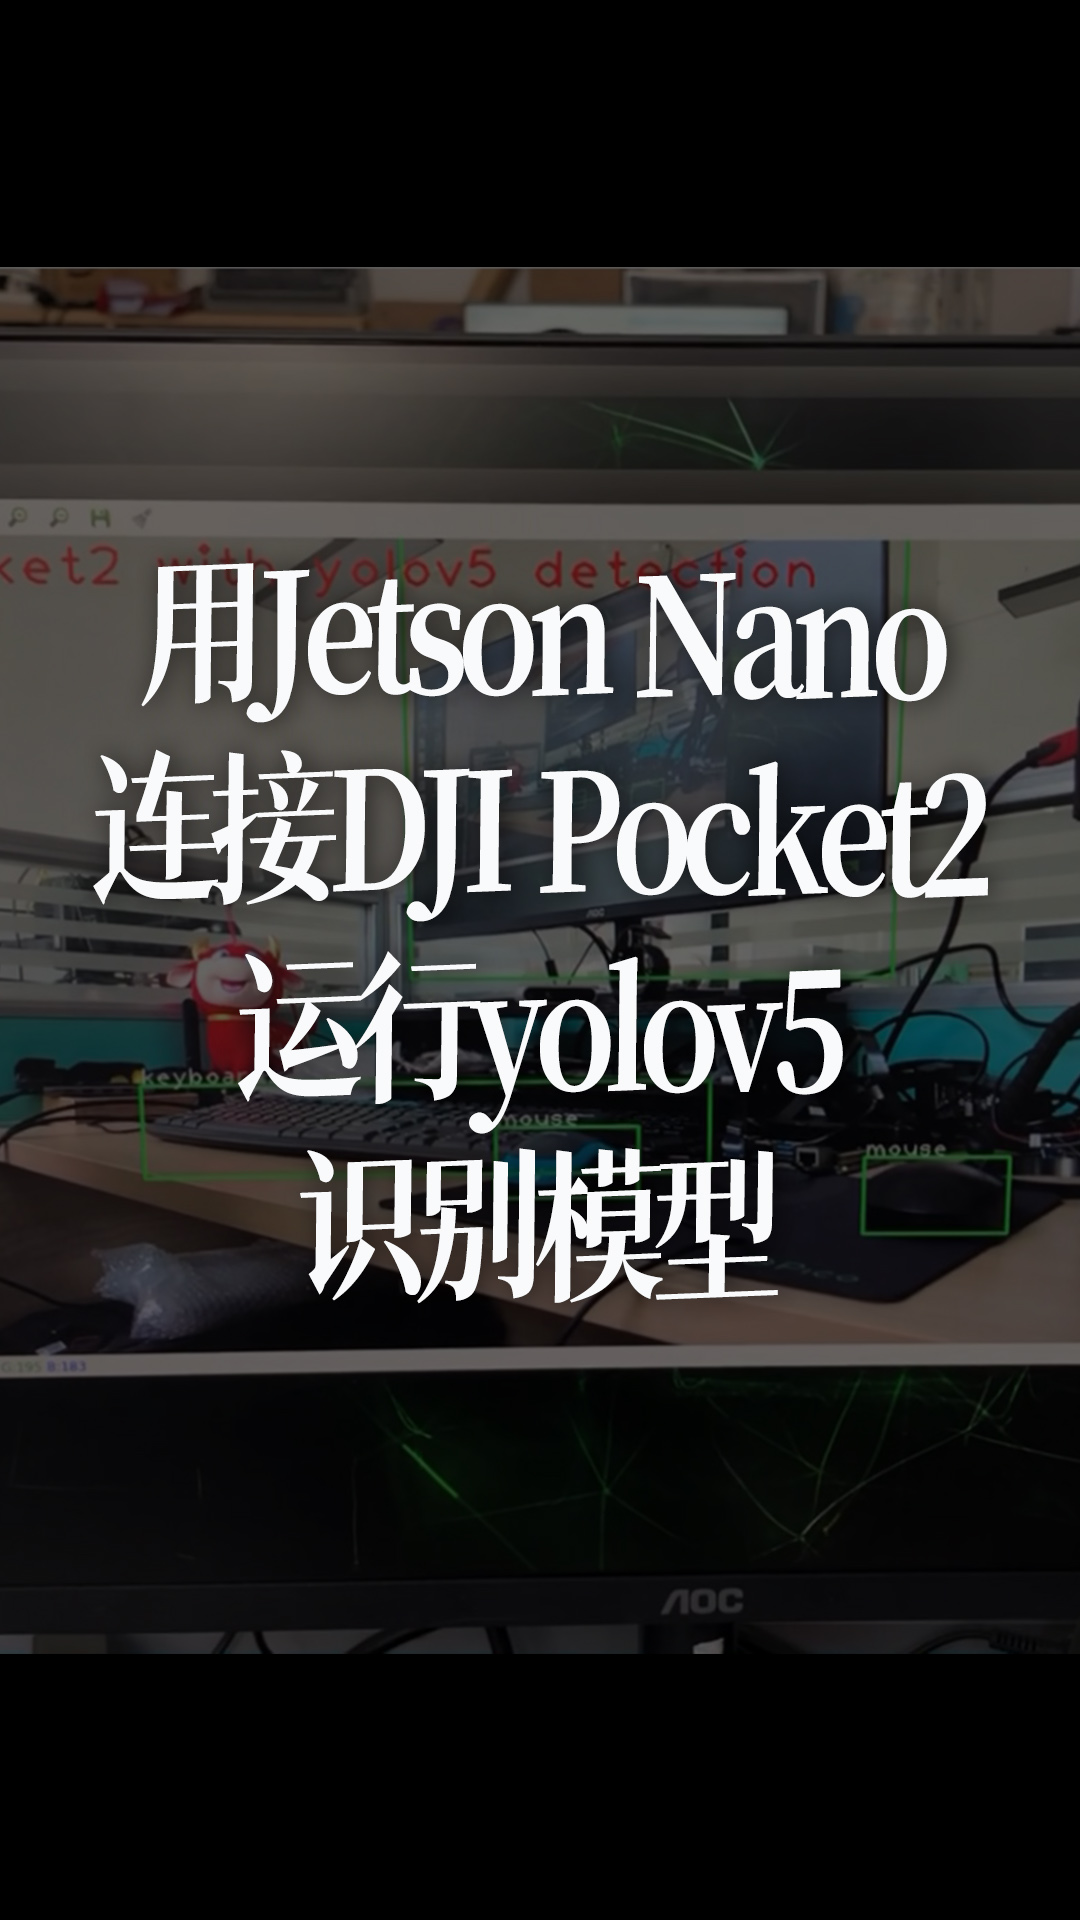 用Jetson Nano连接DJI Pocket2运行yolov5识别模型 